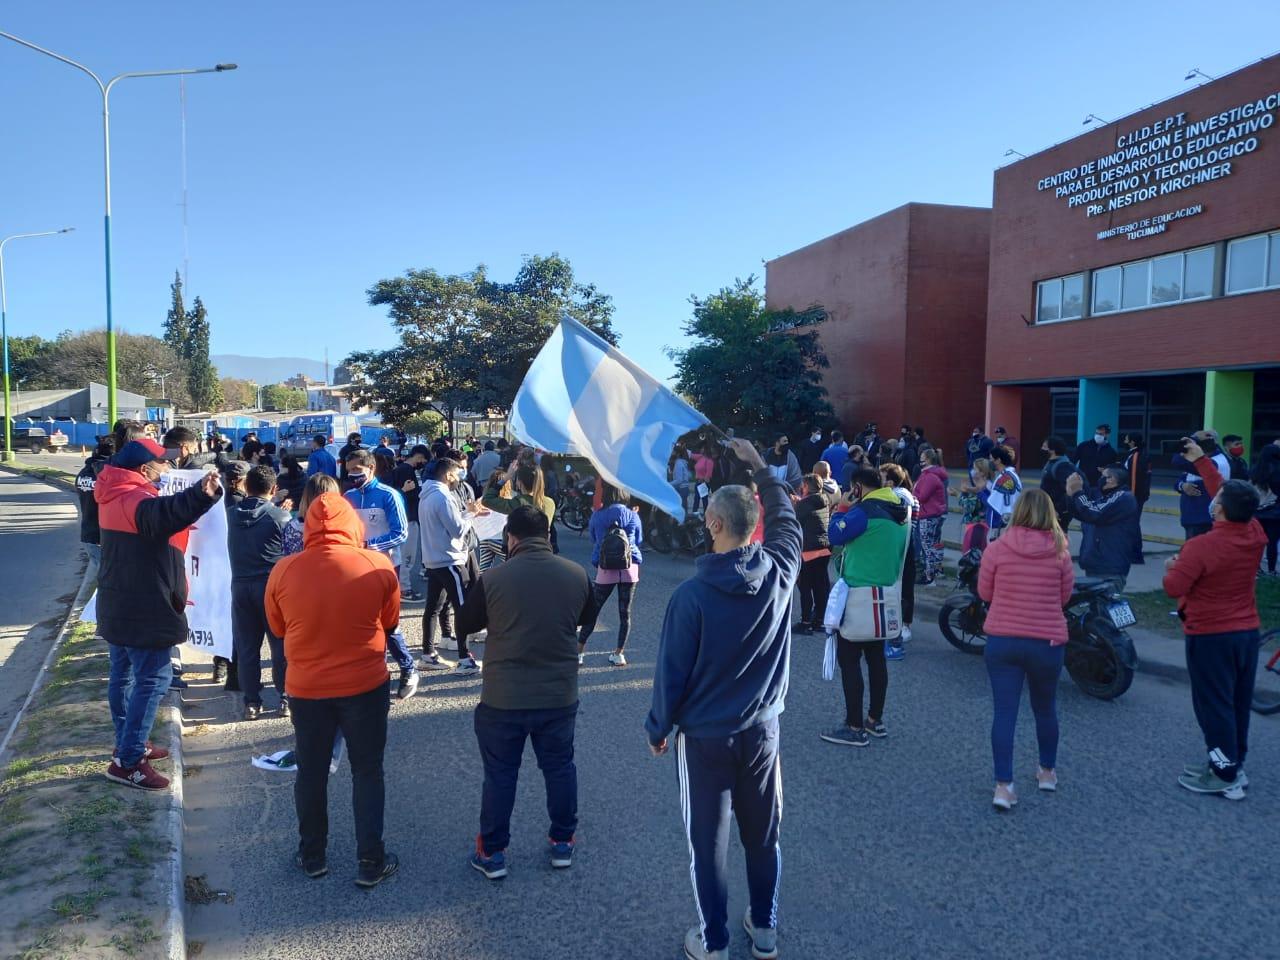 SOBRE JOSÉ INGENIEROS AL 200. Protesta contra las restricciones. Foto LA GACETA / ANALÍA JARAMILLO